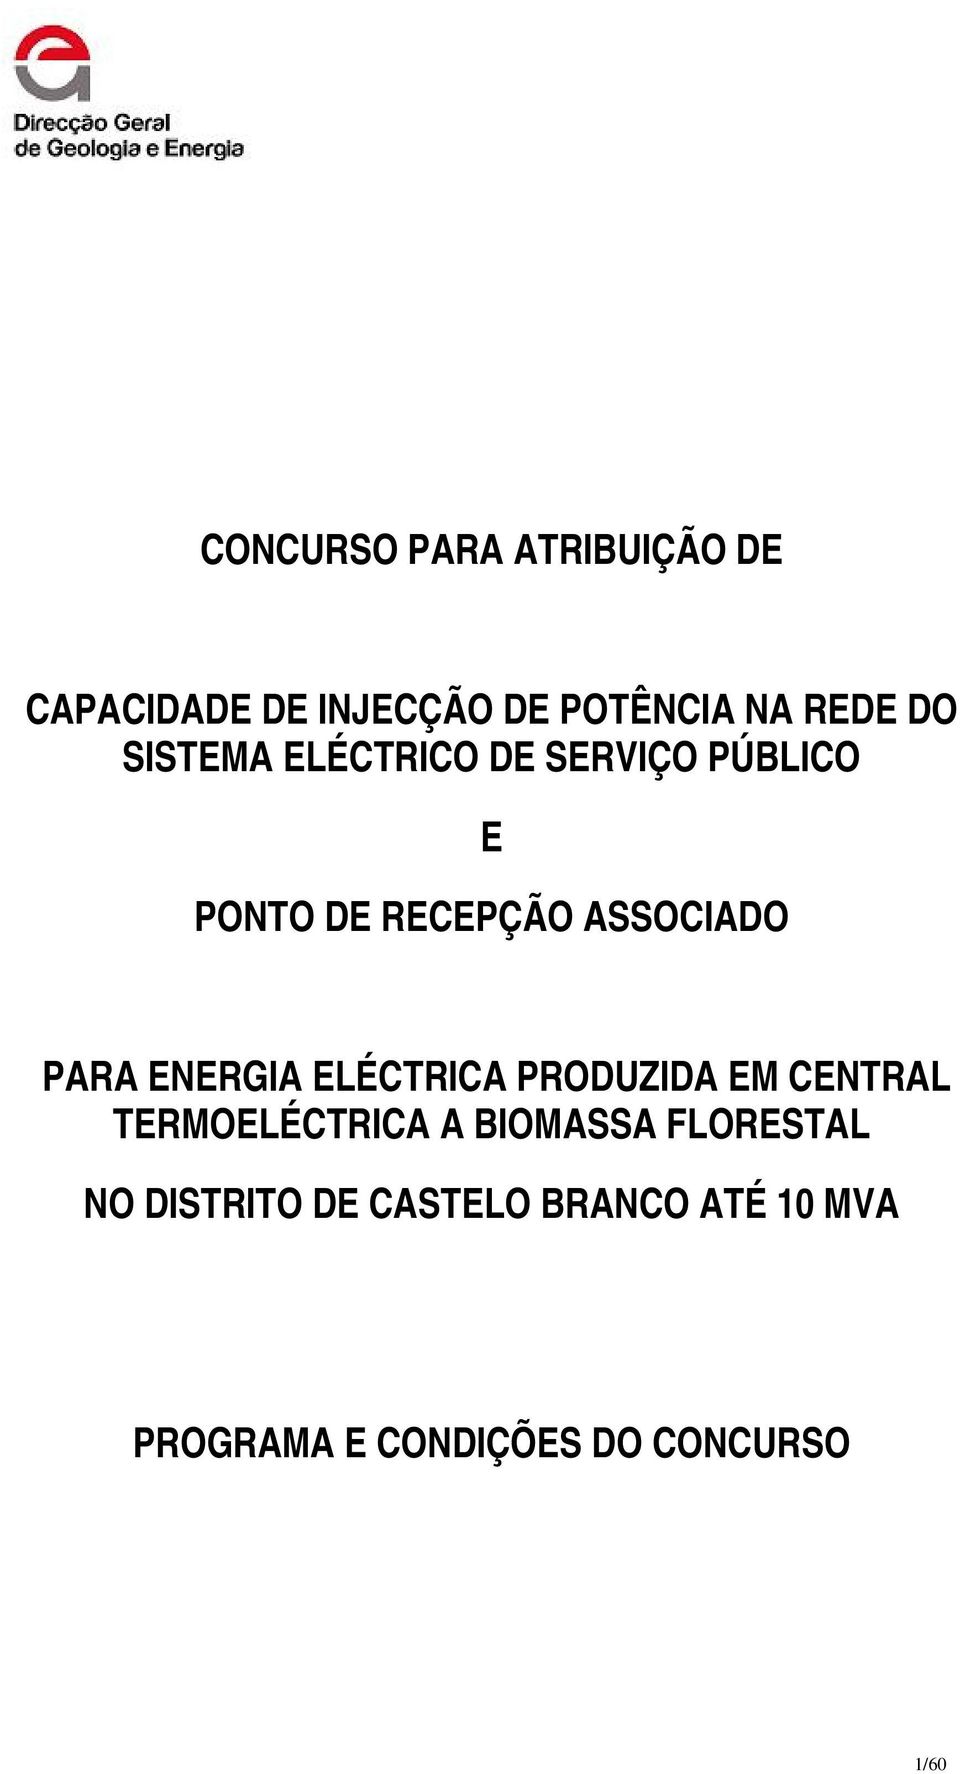 ENERGIA ELÉCTRICA PRODUZIDA EM CENTRAL TERMOELÉCTRICA A BIOMASSA FLORESTAL